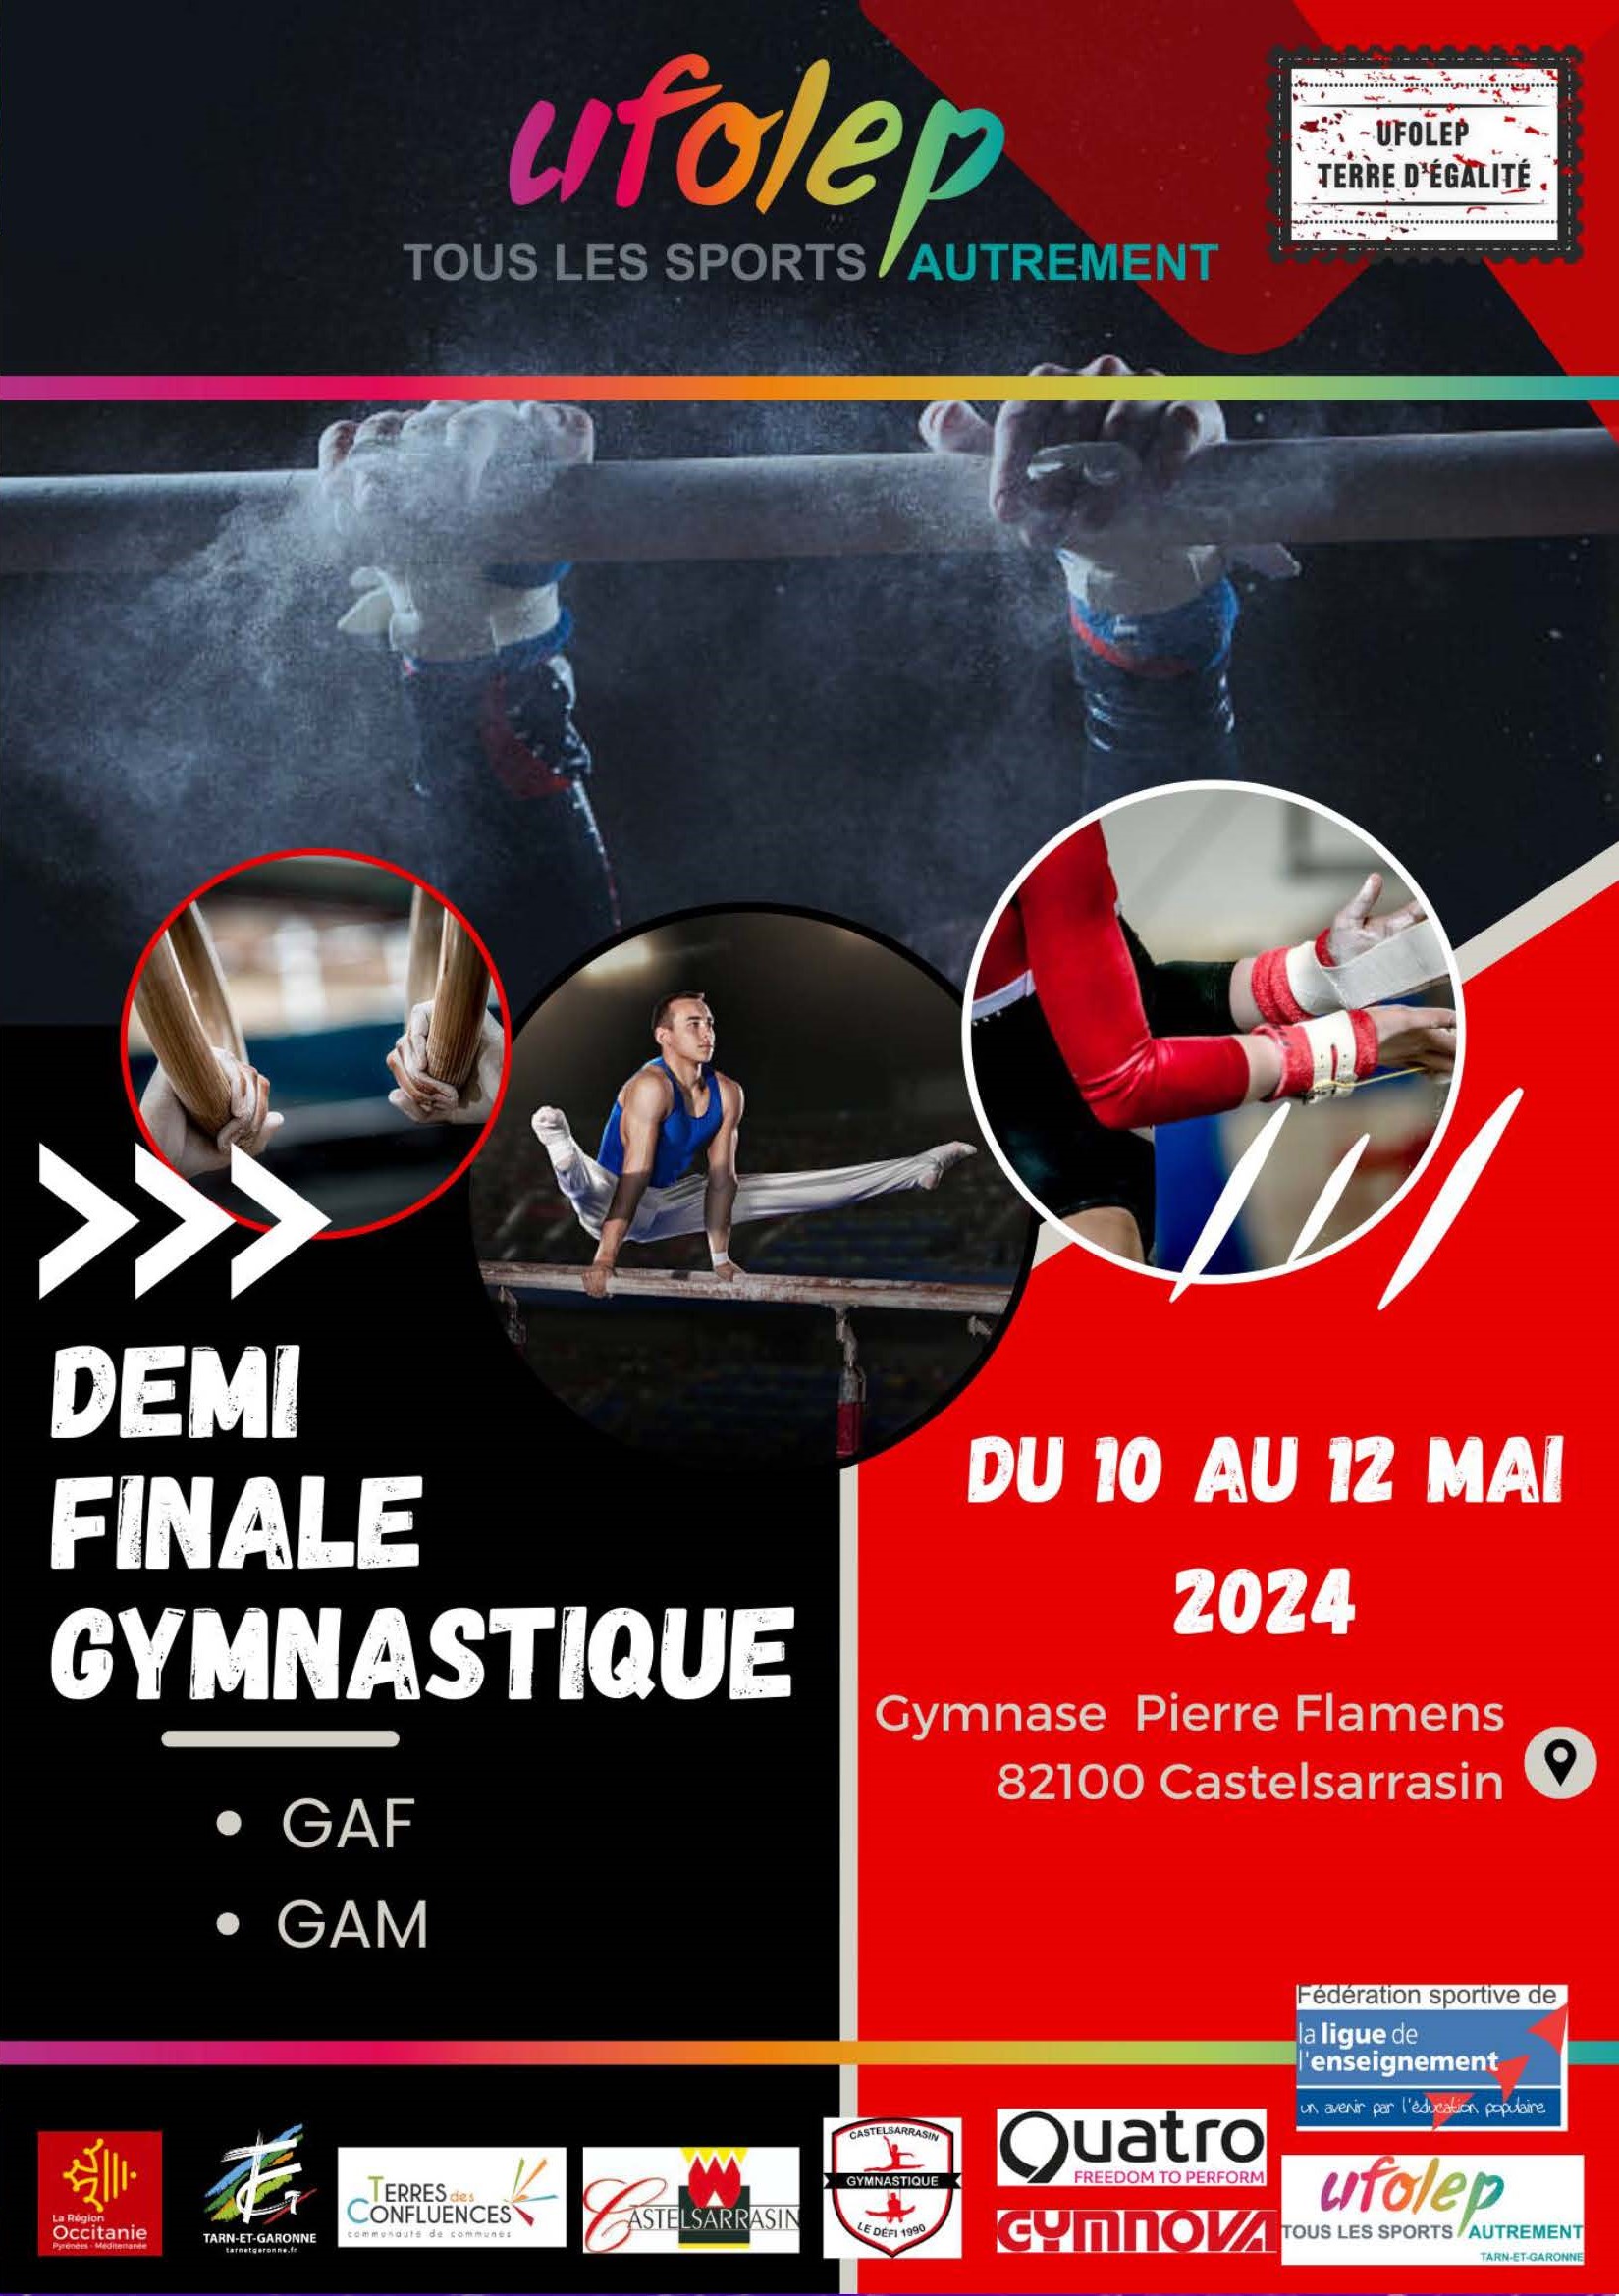 Demi finale gymnastique du 10 au 12 mai 2024 au gymnase Pierre Flamens à Castelsarrasin